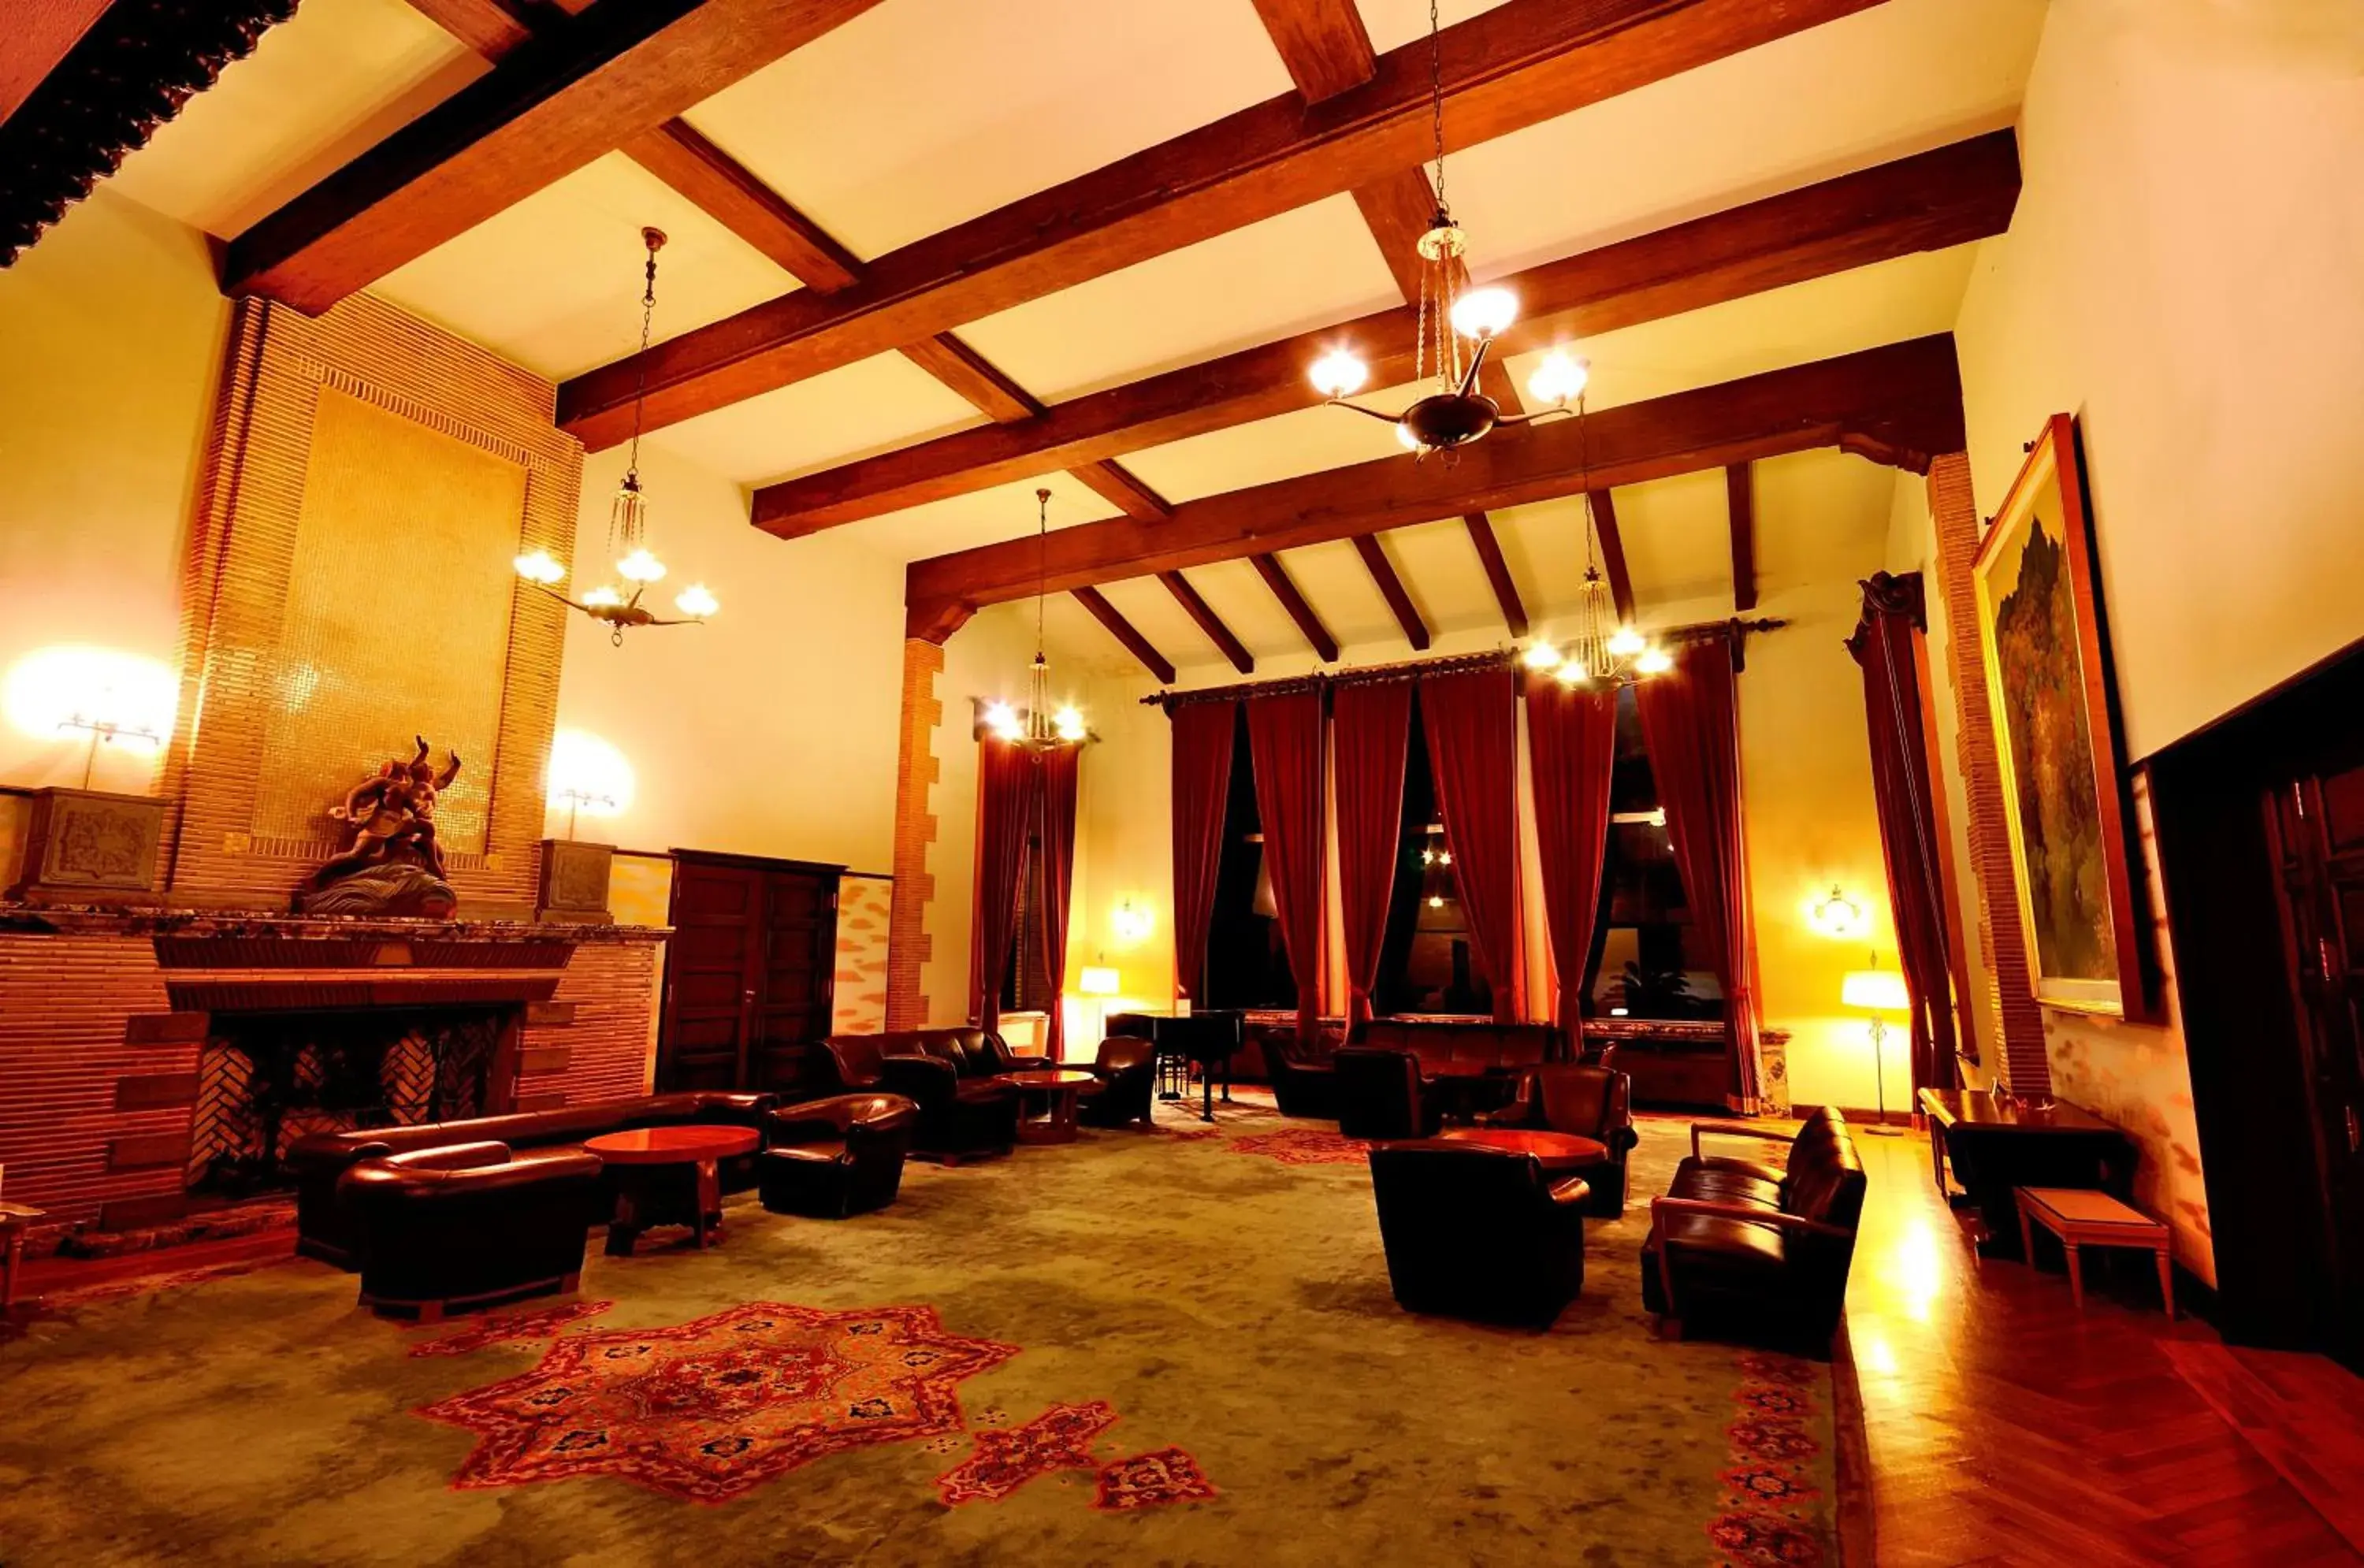 Lobby or reception, Lobby/Reception in Kawana Hotel